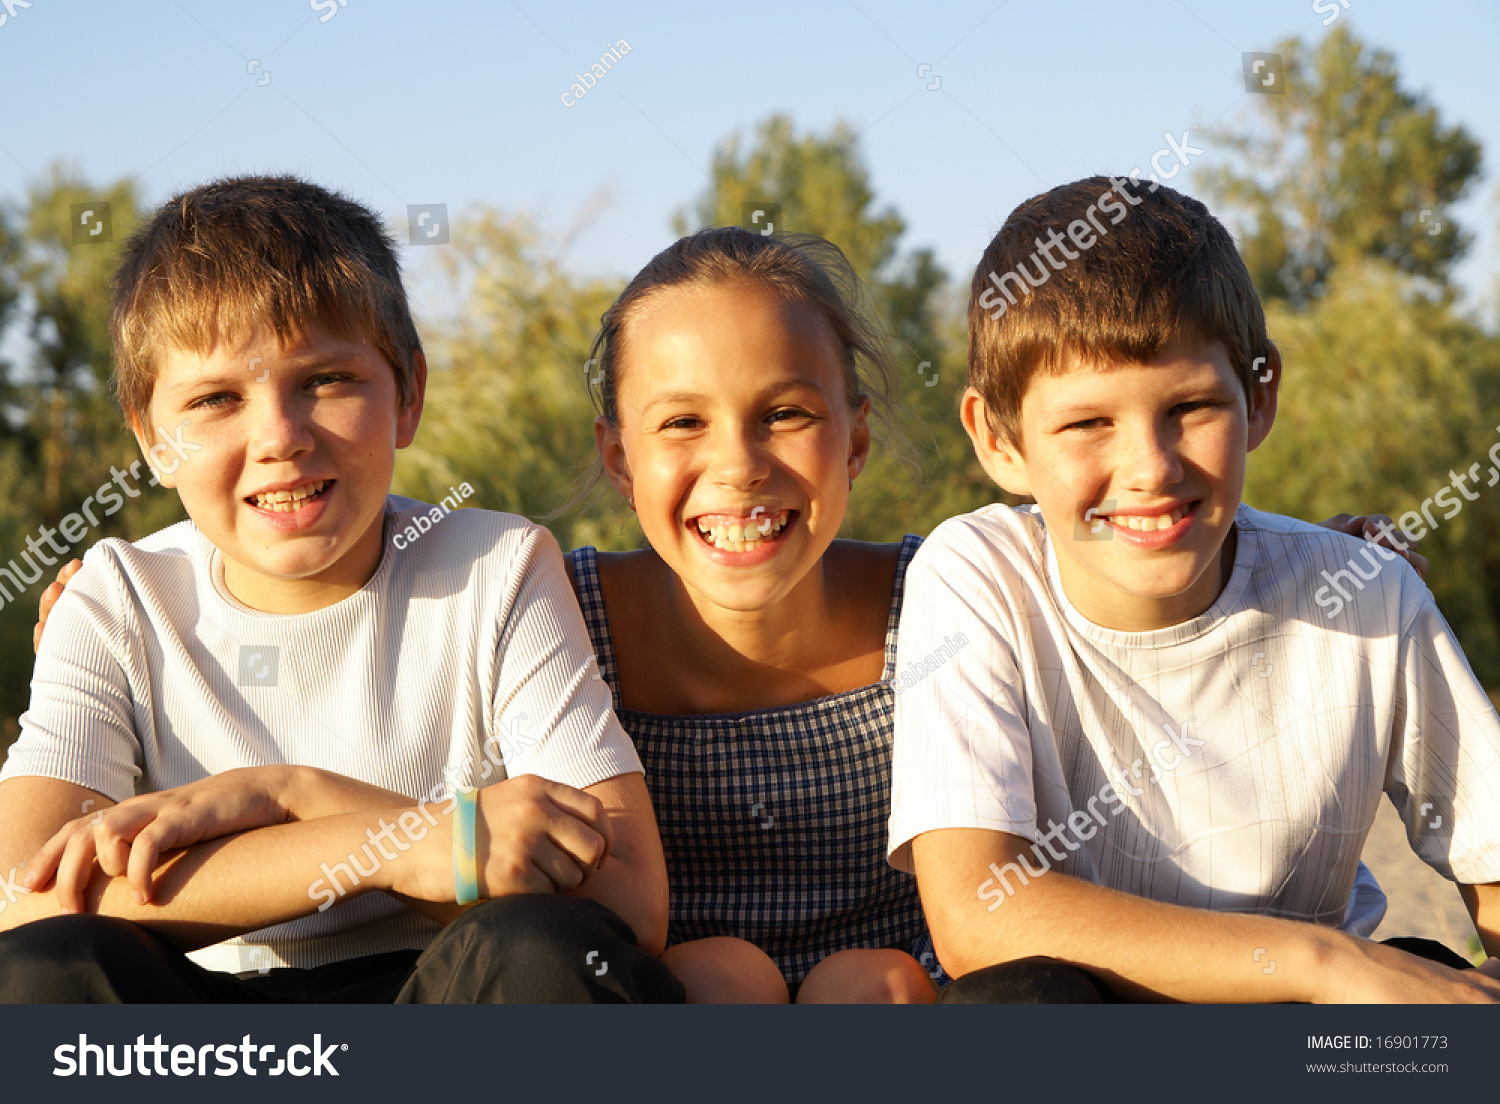 Three Preteen Friends Enjoying Summer Outdoors Stock Photo 16901773 ...